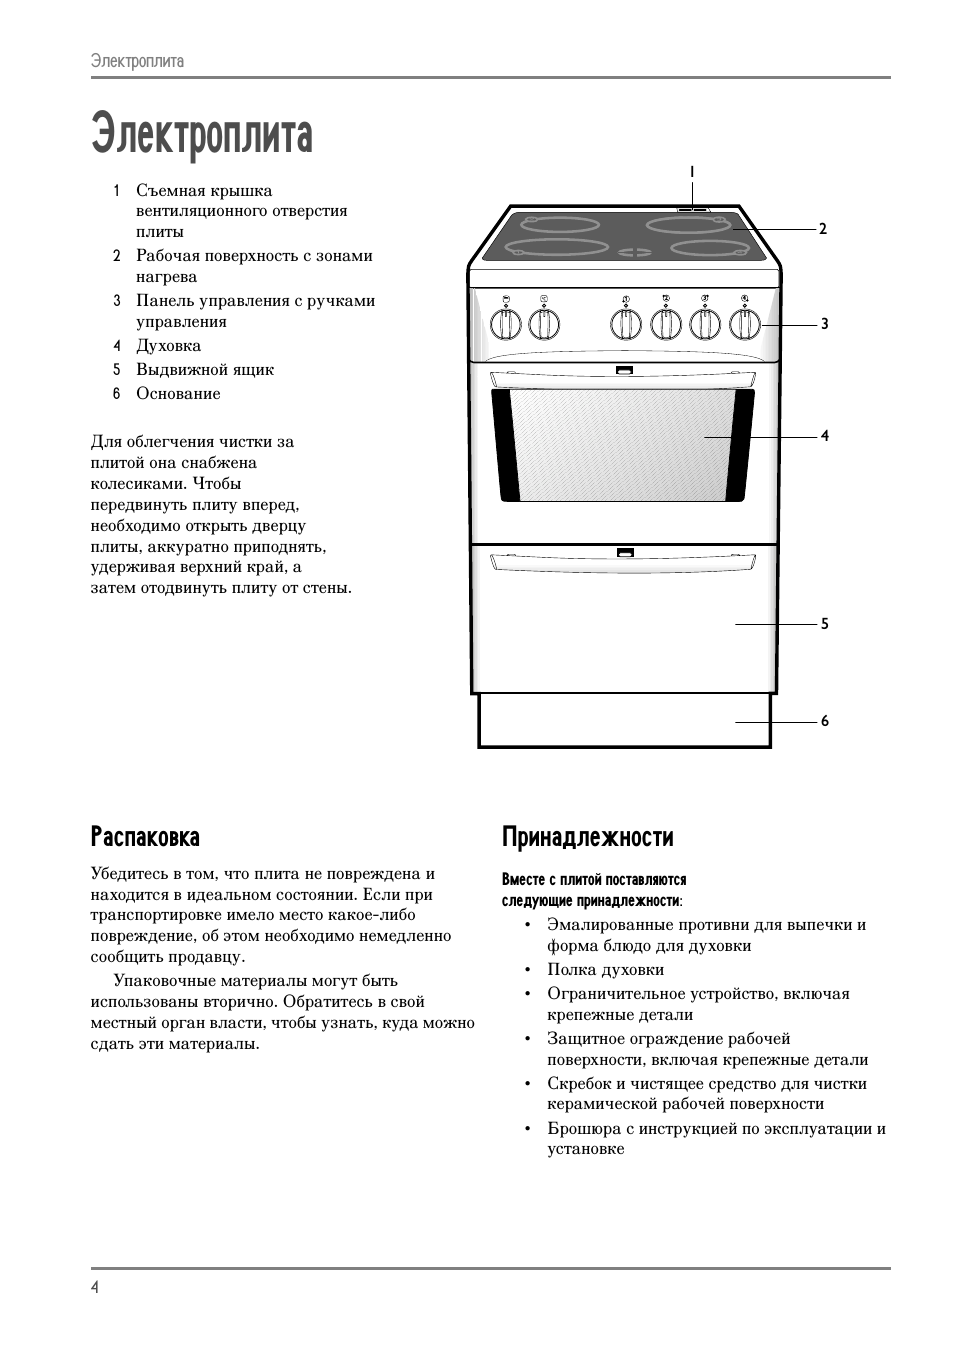 Устройство газовой плиты: конструкция плиты и духовки. принцип работы и правила эксплуатации